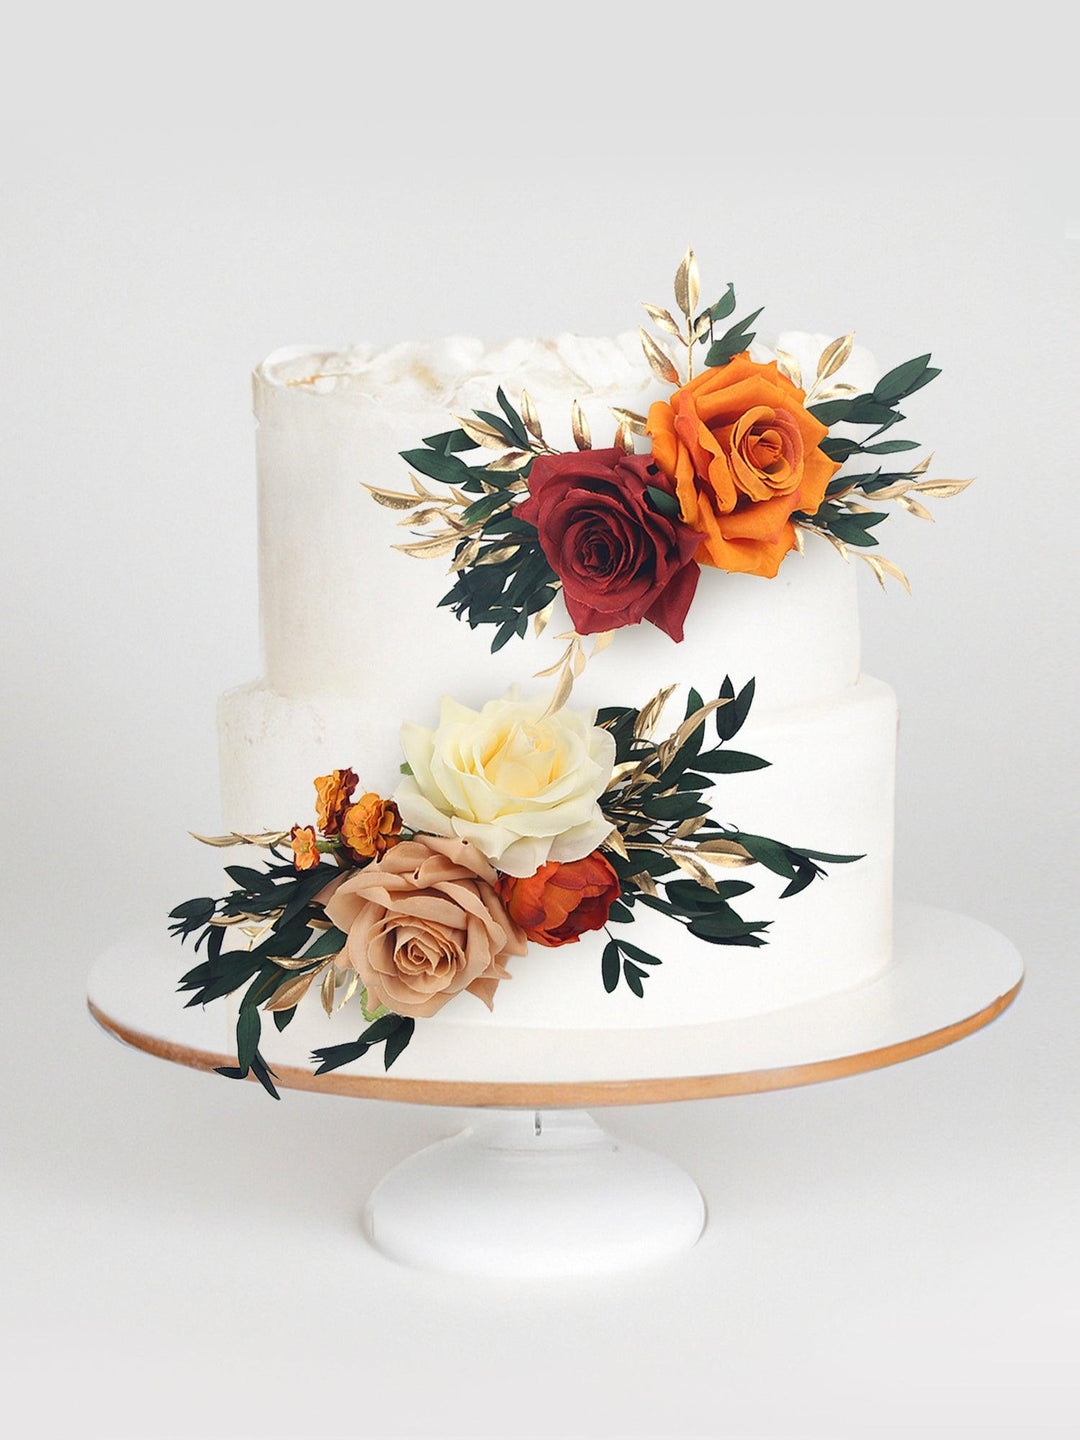 Flower Cake Decorations wedding topper Rinlong – cake decor Flower